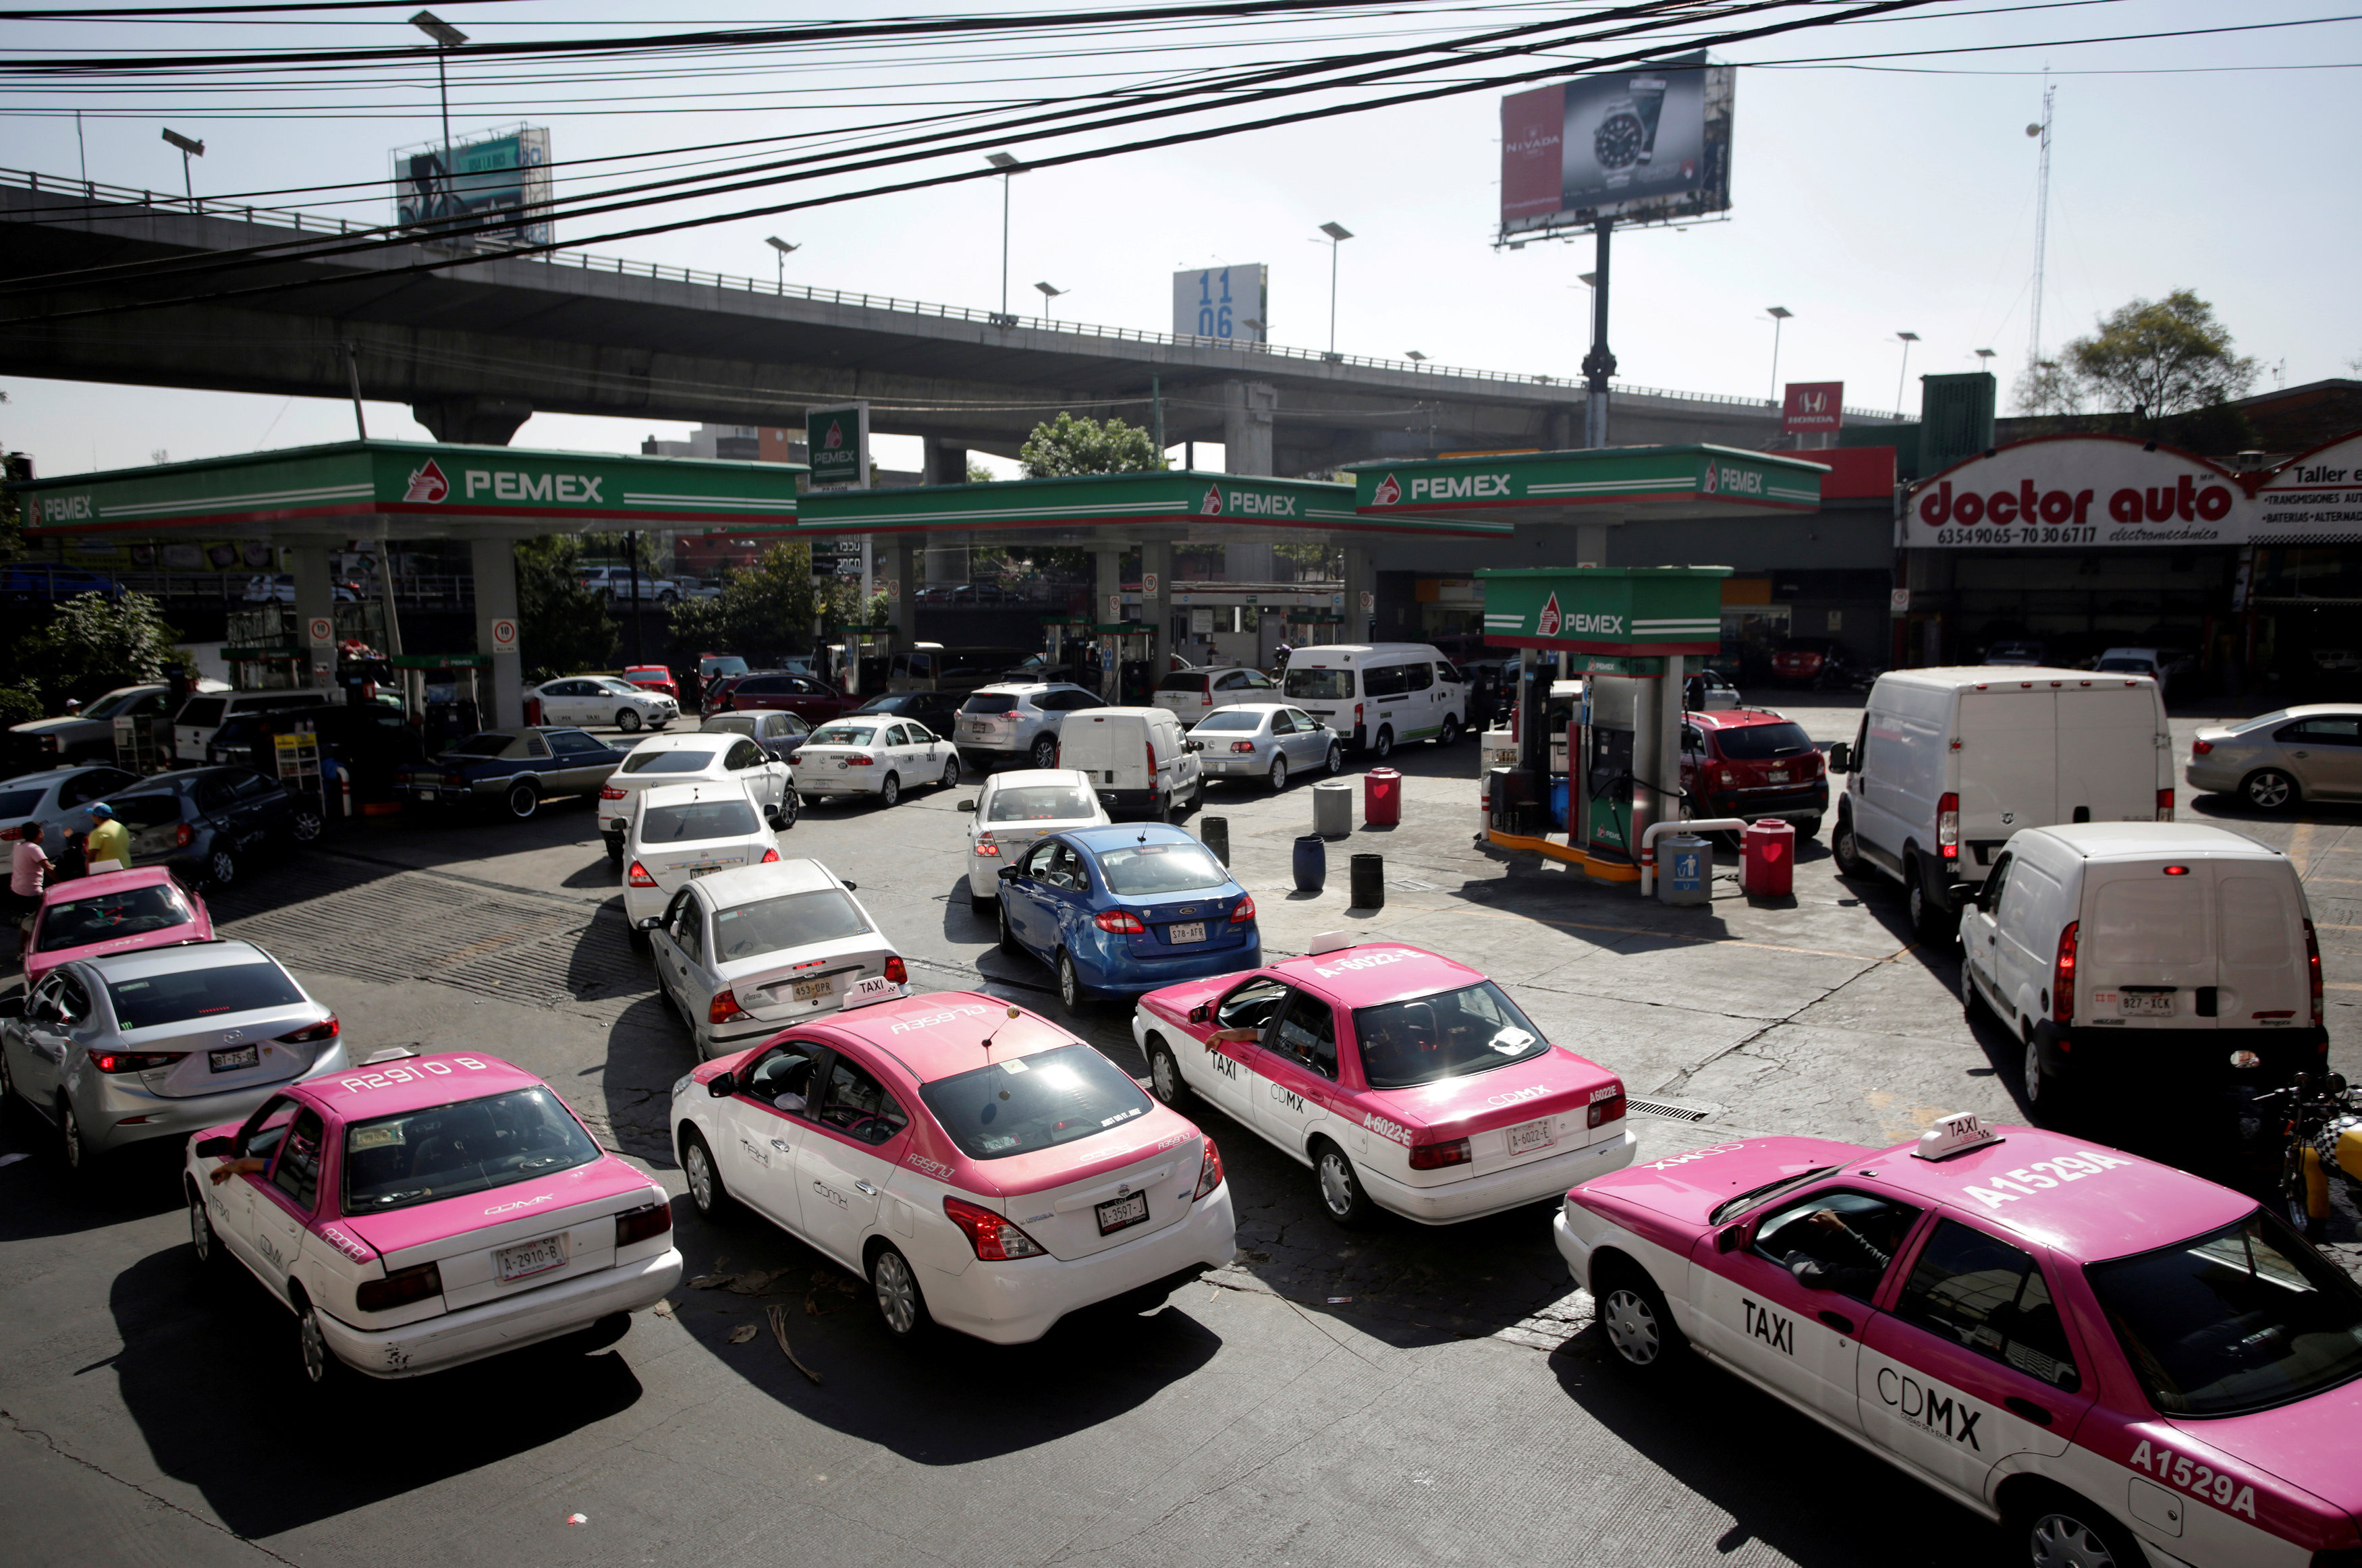 تفاقم أزمة الوقود فى المكسيك (5)